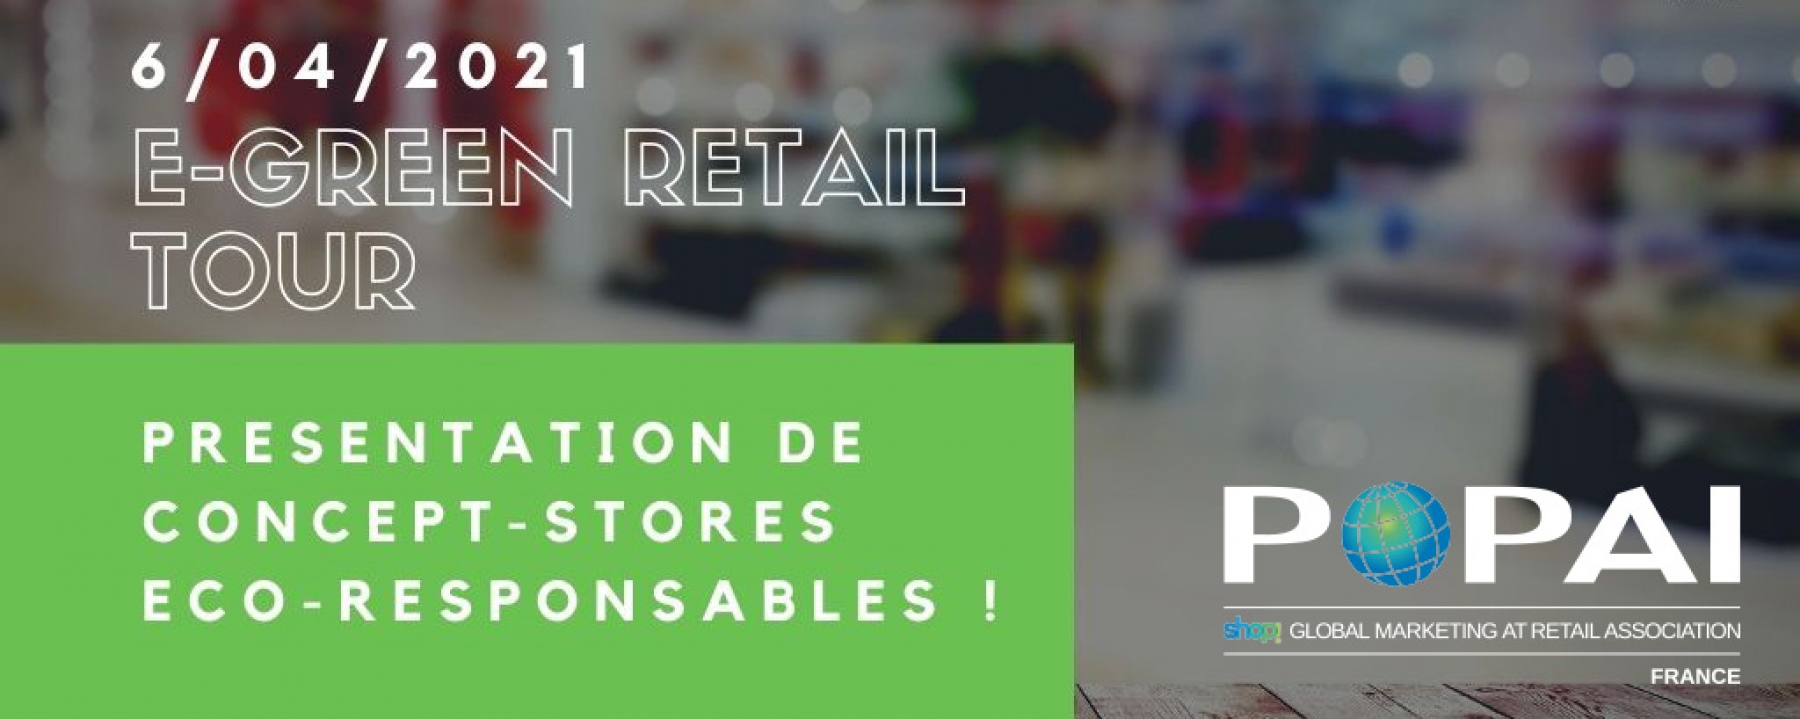 E-Green Retail Tour, organisé par, POPAI France le 6 avril